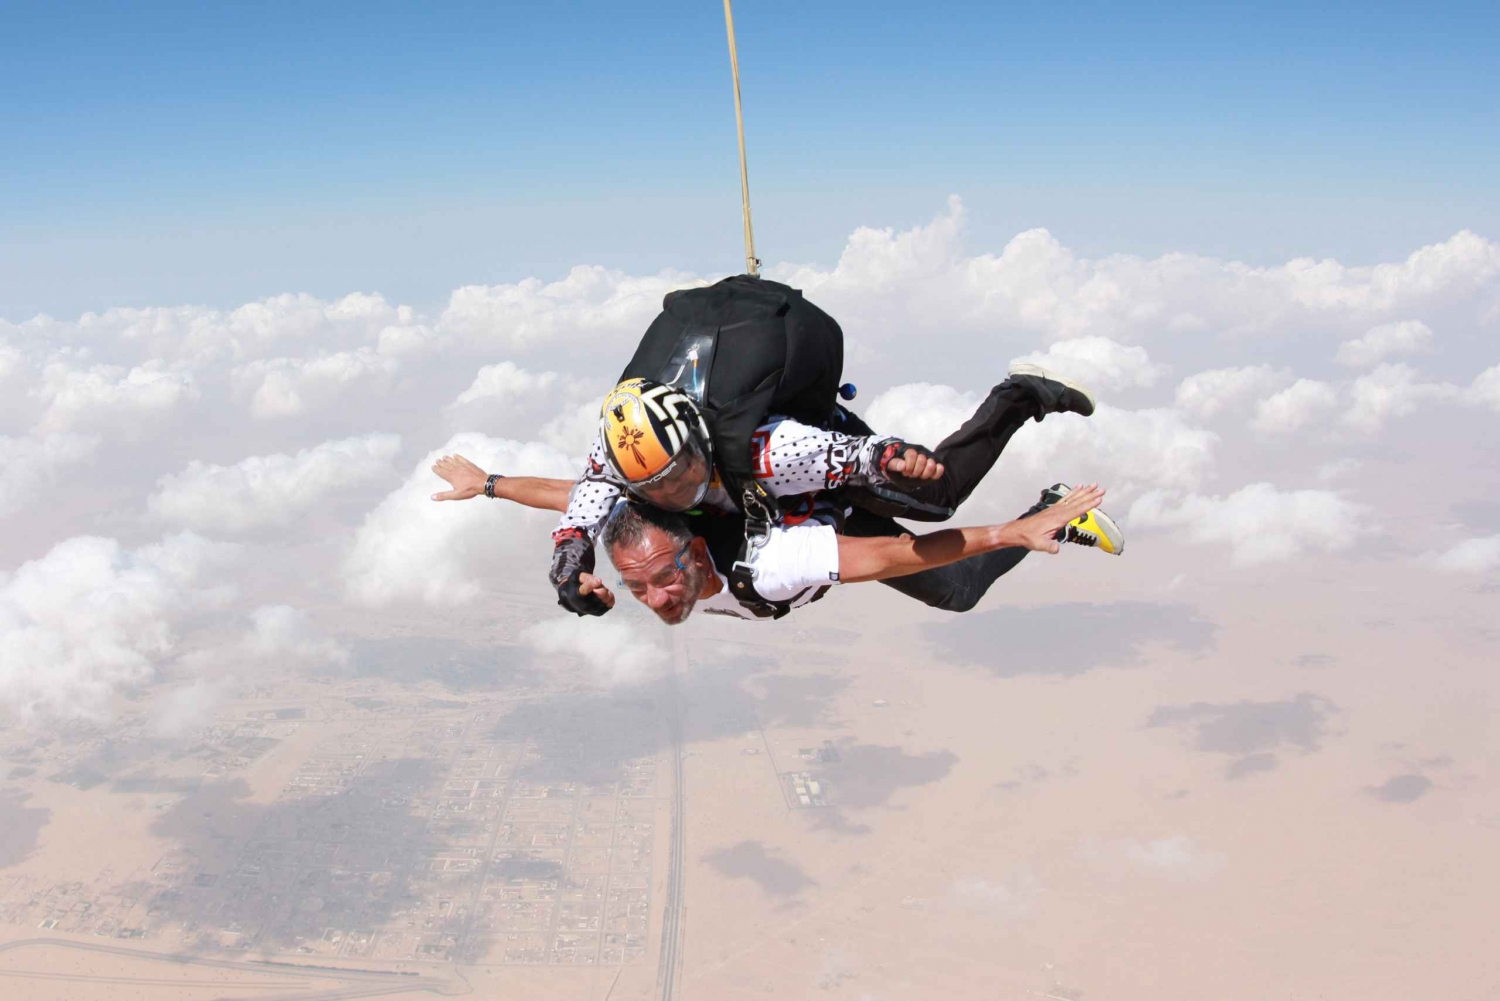 Dubai: Skydive in the Dubai Desert